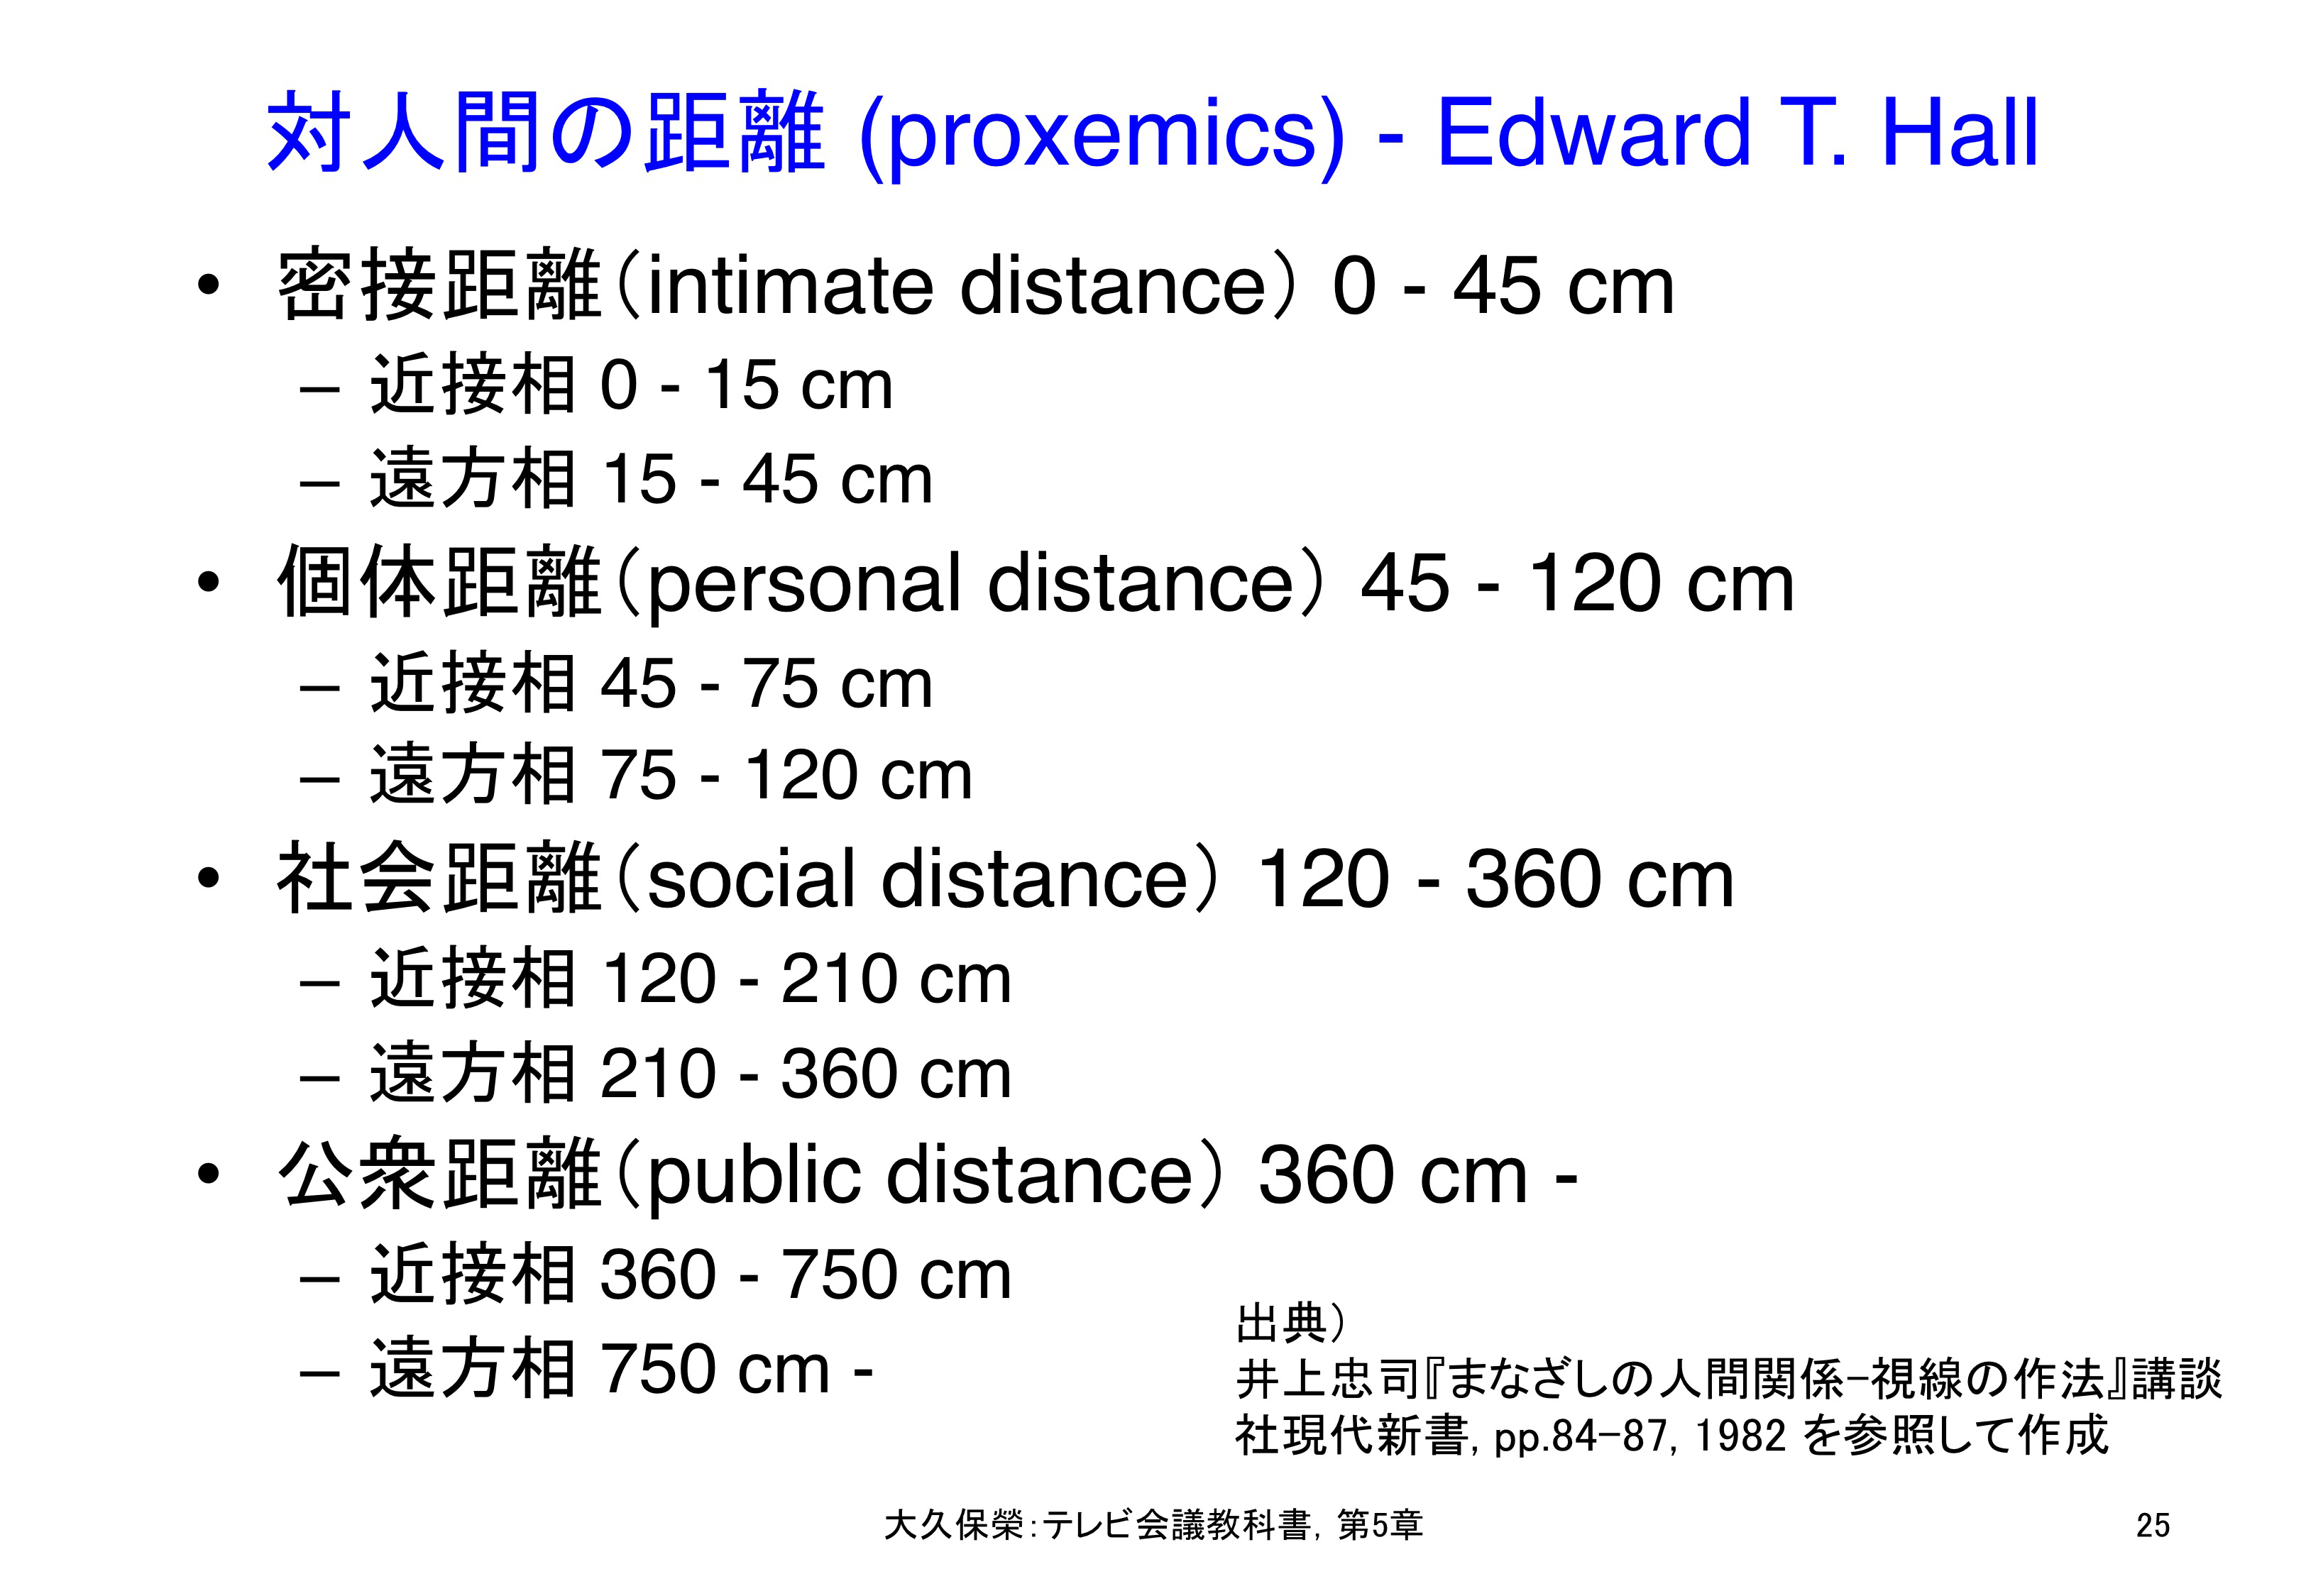 図5-25 E. T. ホールによる対人間の距離 (proxemics)